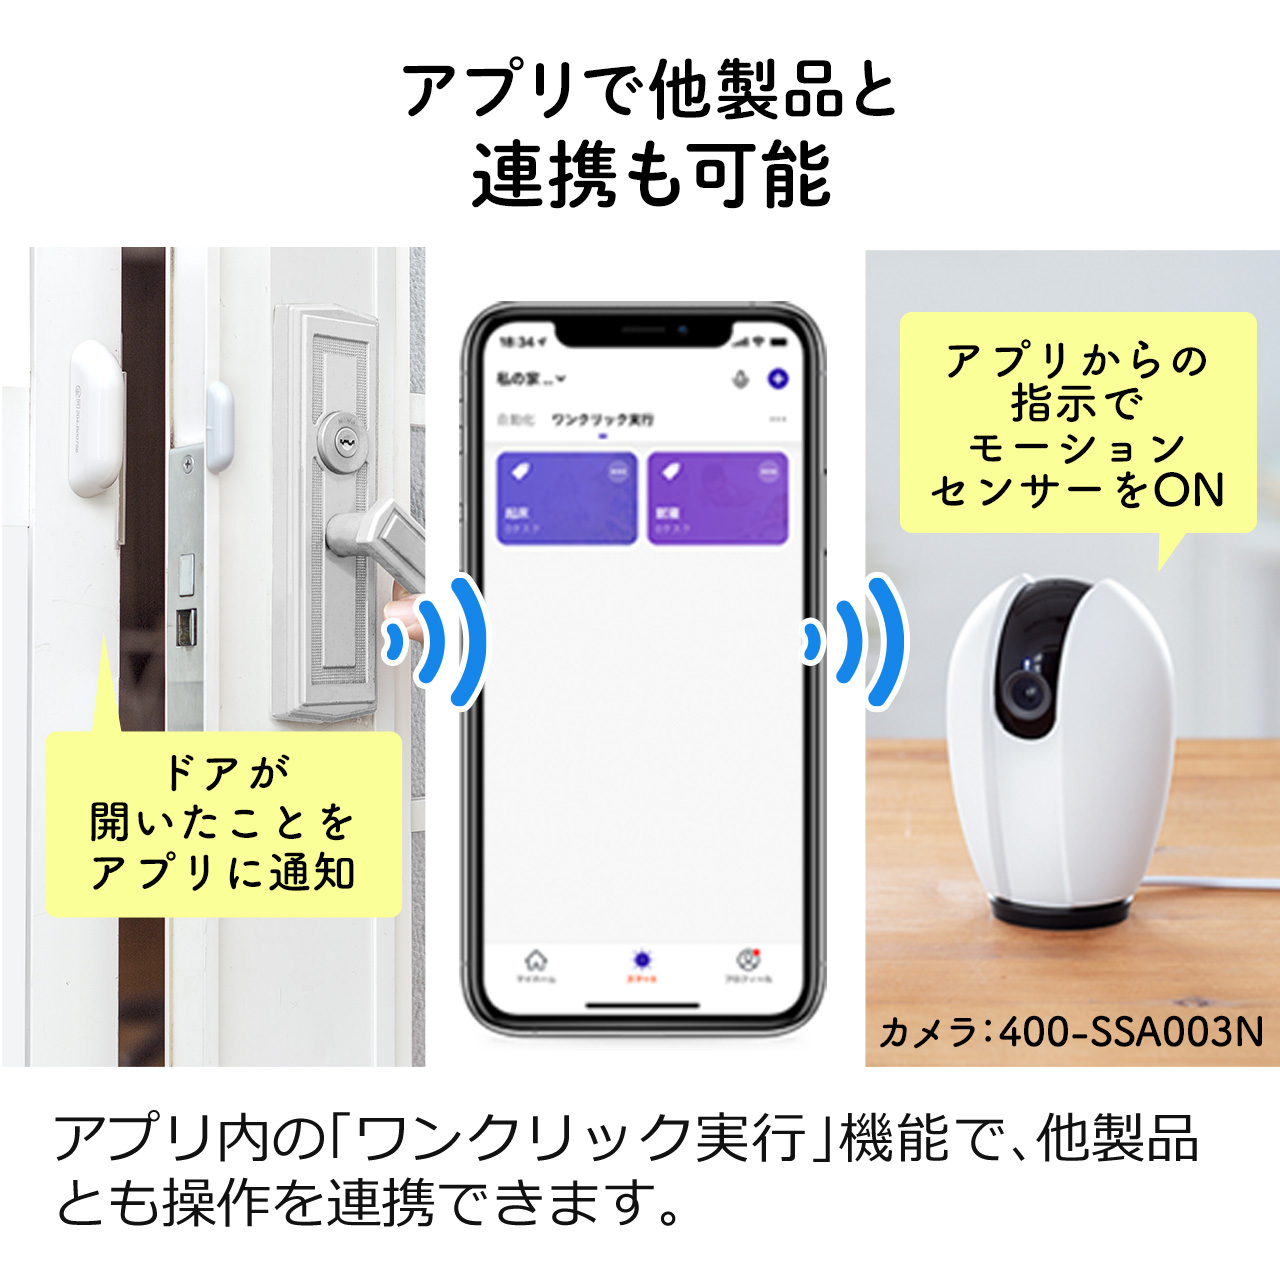 開閉センサー スマホ通知 防犯対策 Wi-Fi接続 ドア・ポスト設置 iPhone Android対応 400-SSA002